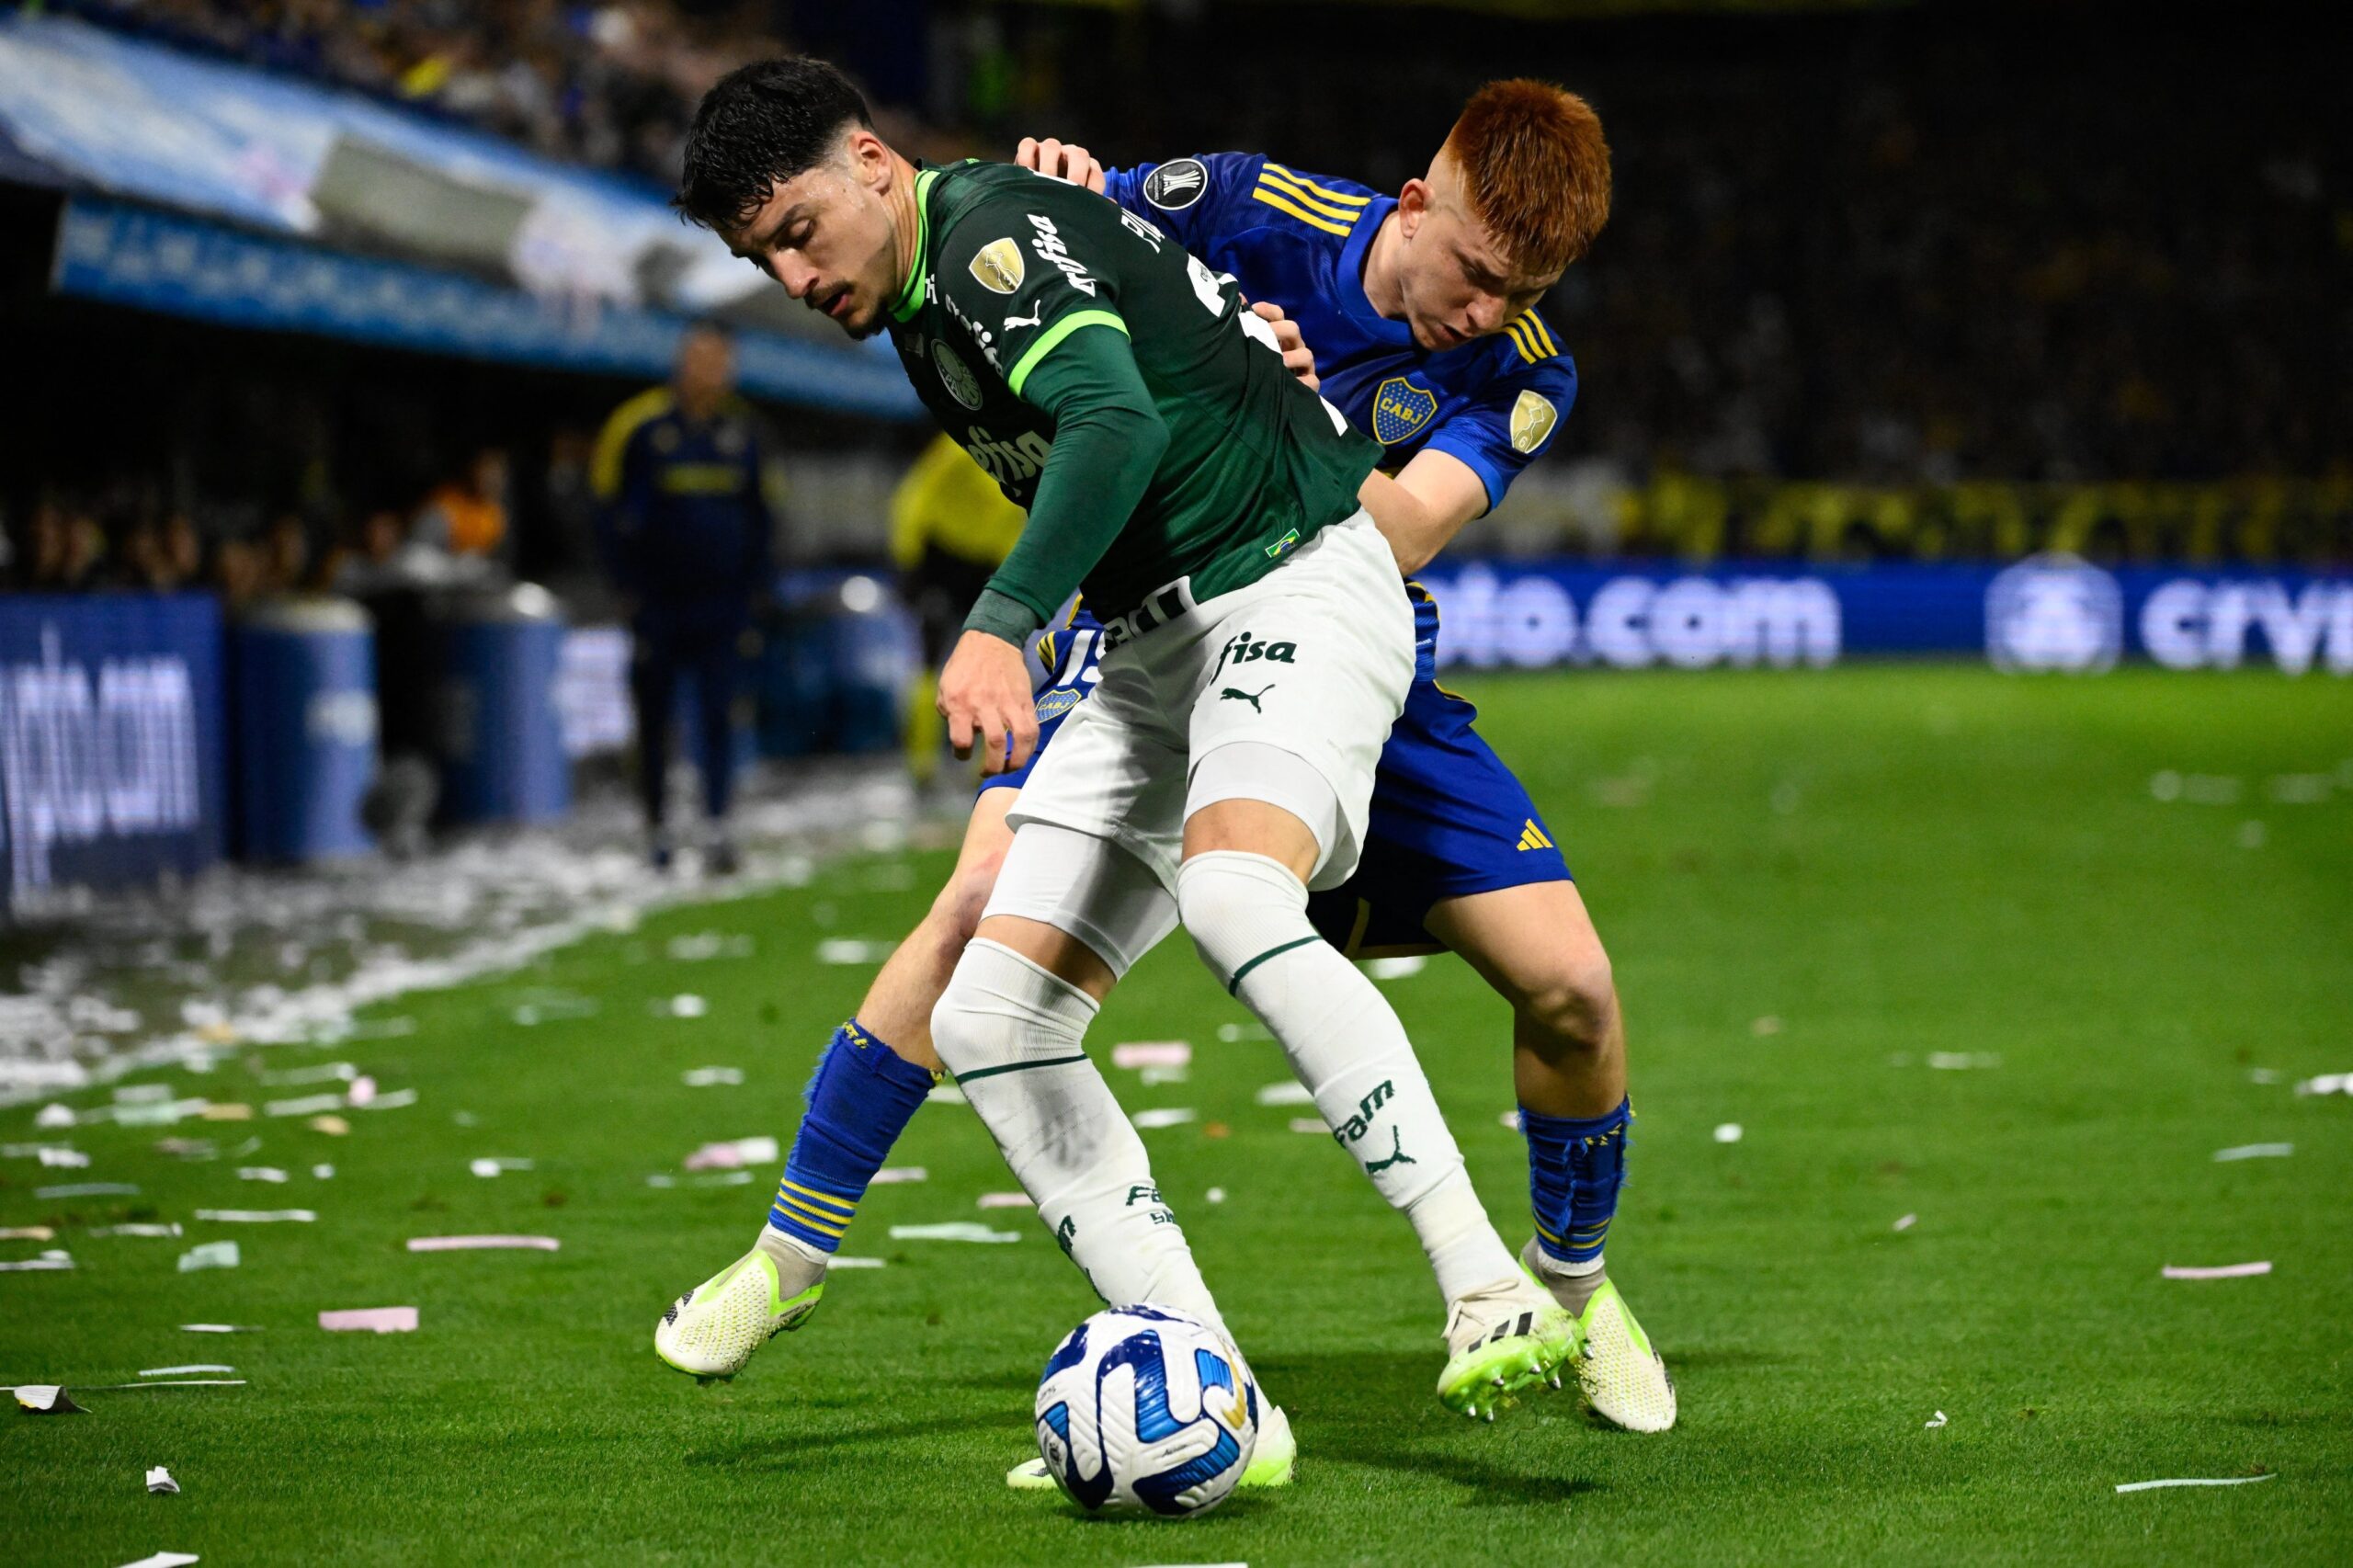 Palmeiras x Boca Juniors-ARG: informações, estatísticas e